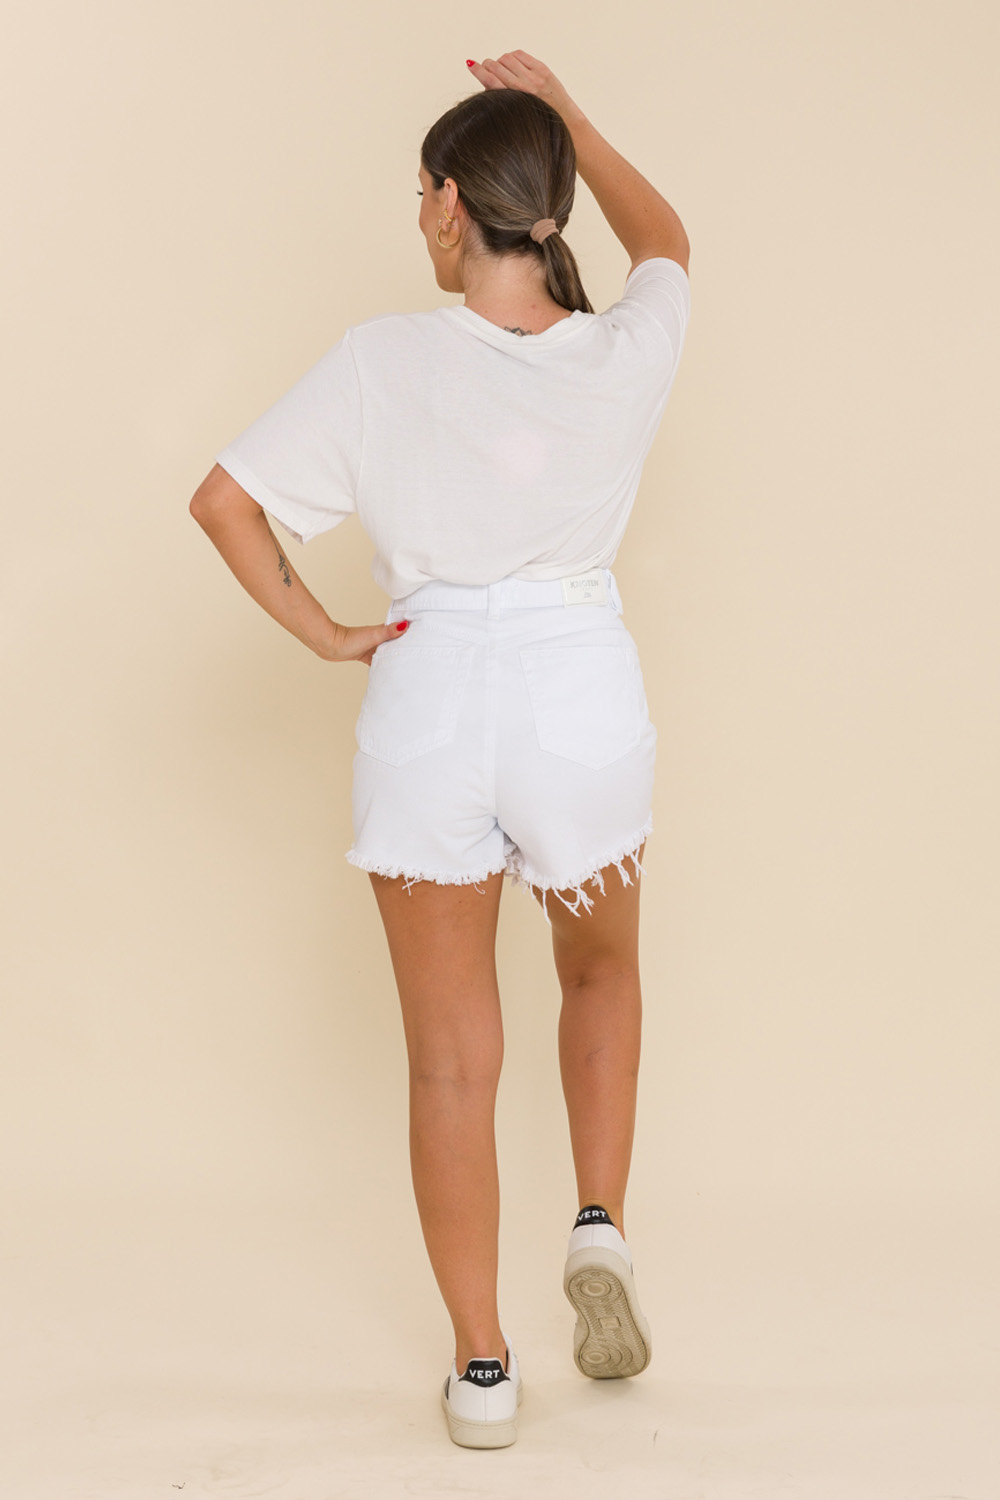 Shorts Sarja Hot Pant Basic - Branco